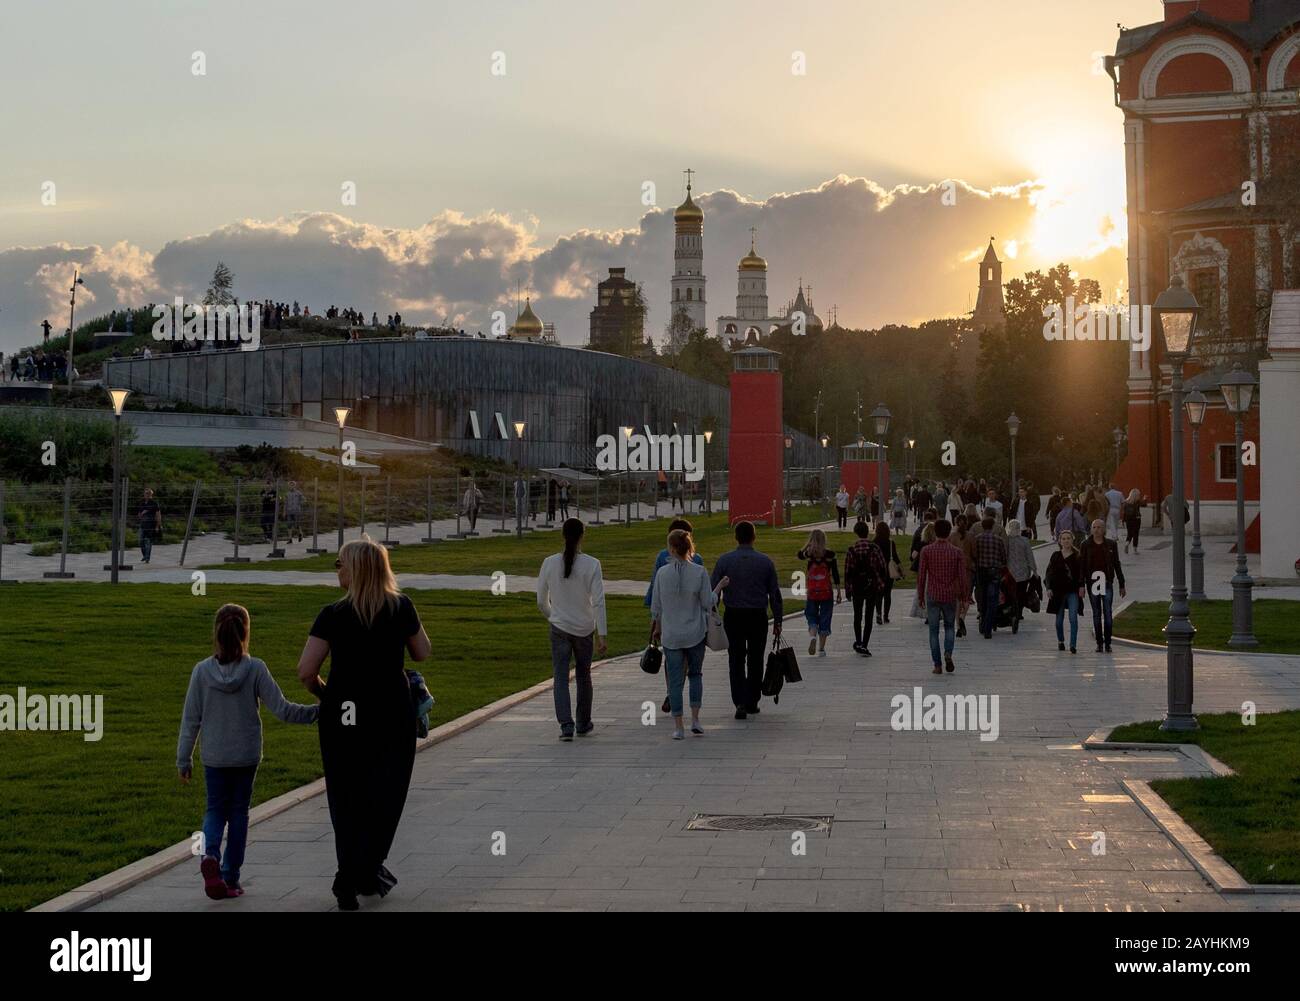 Les visiteurs marchant près de la cathédrale de Znamensky dans le parc de Zaryadye, rue Varvarka, Moscou, Russie Banque D'Images